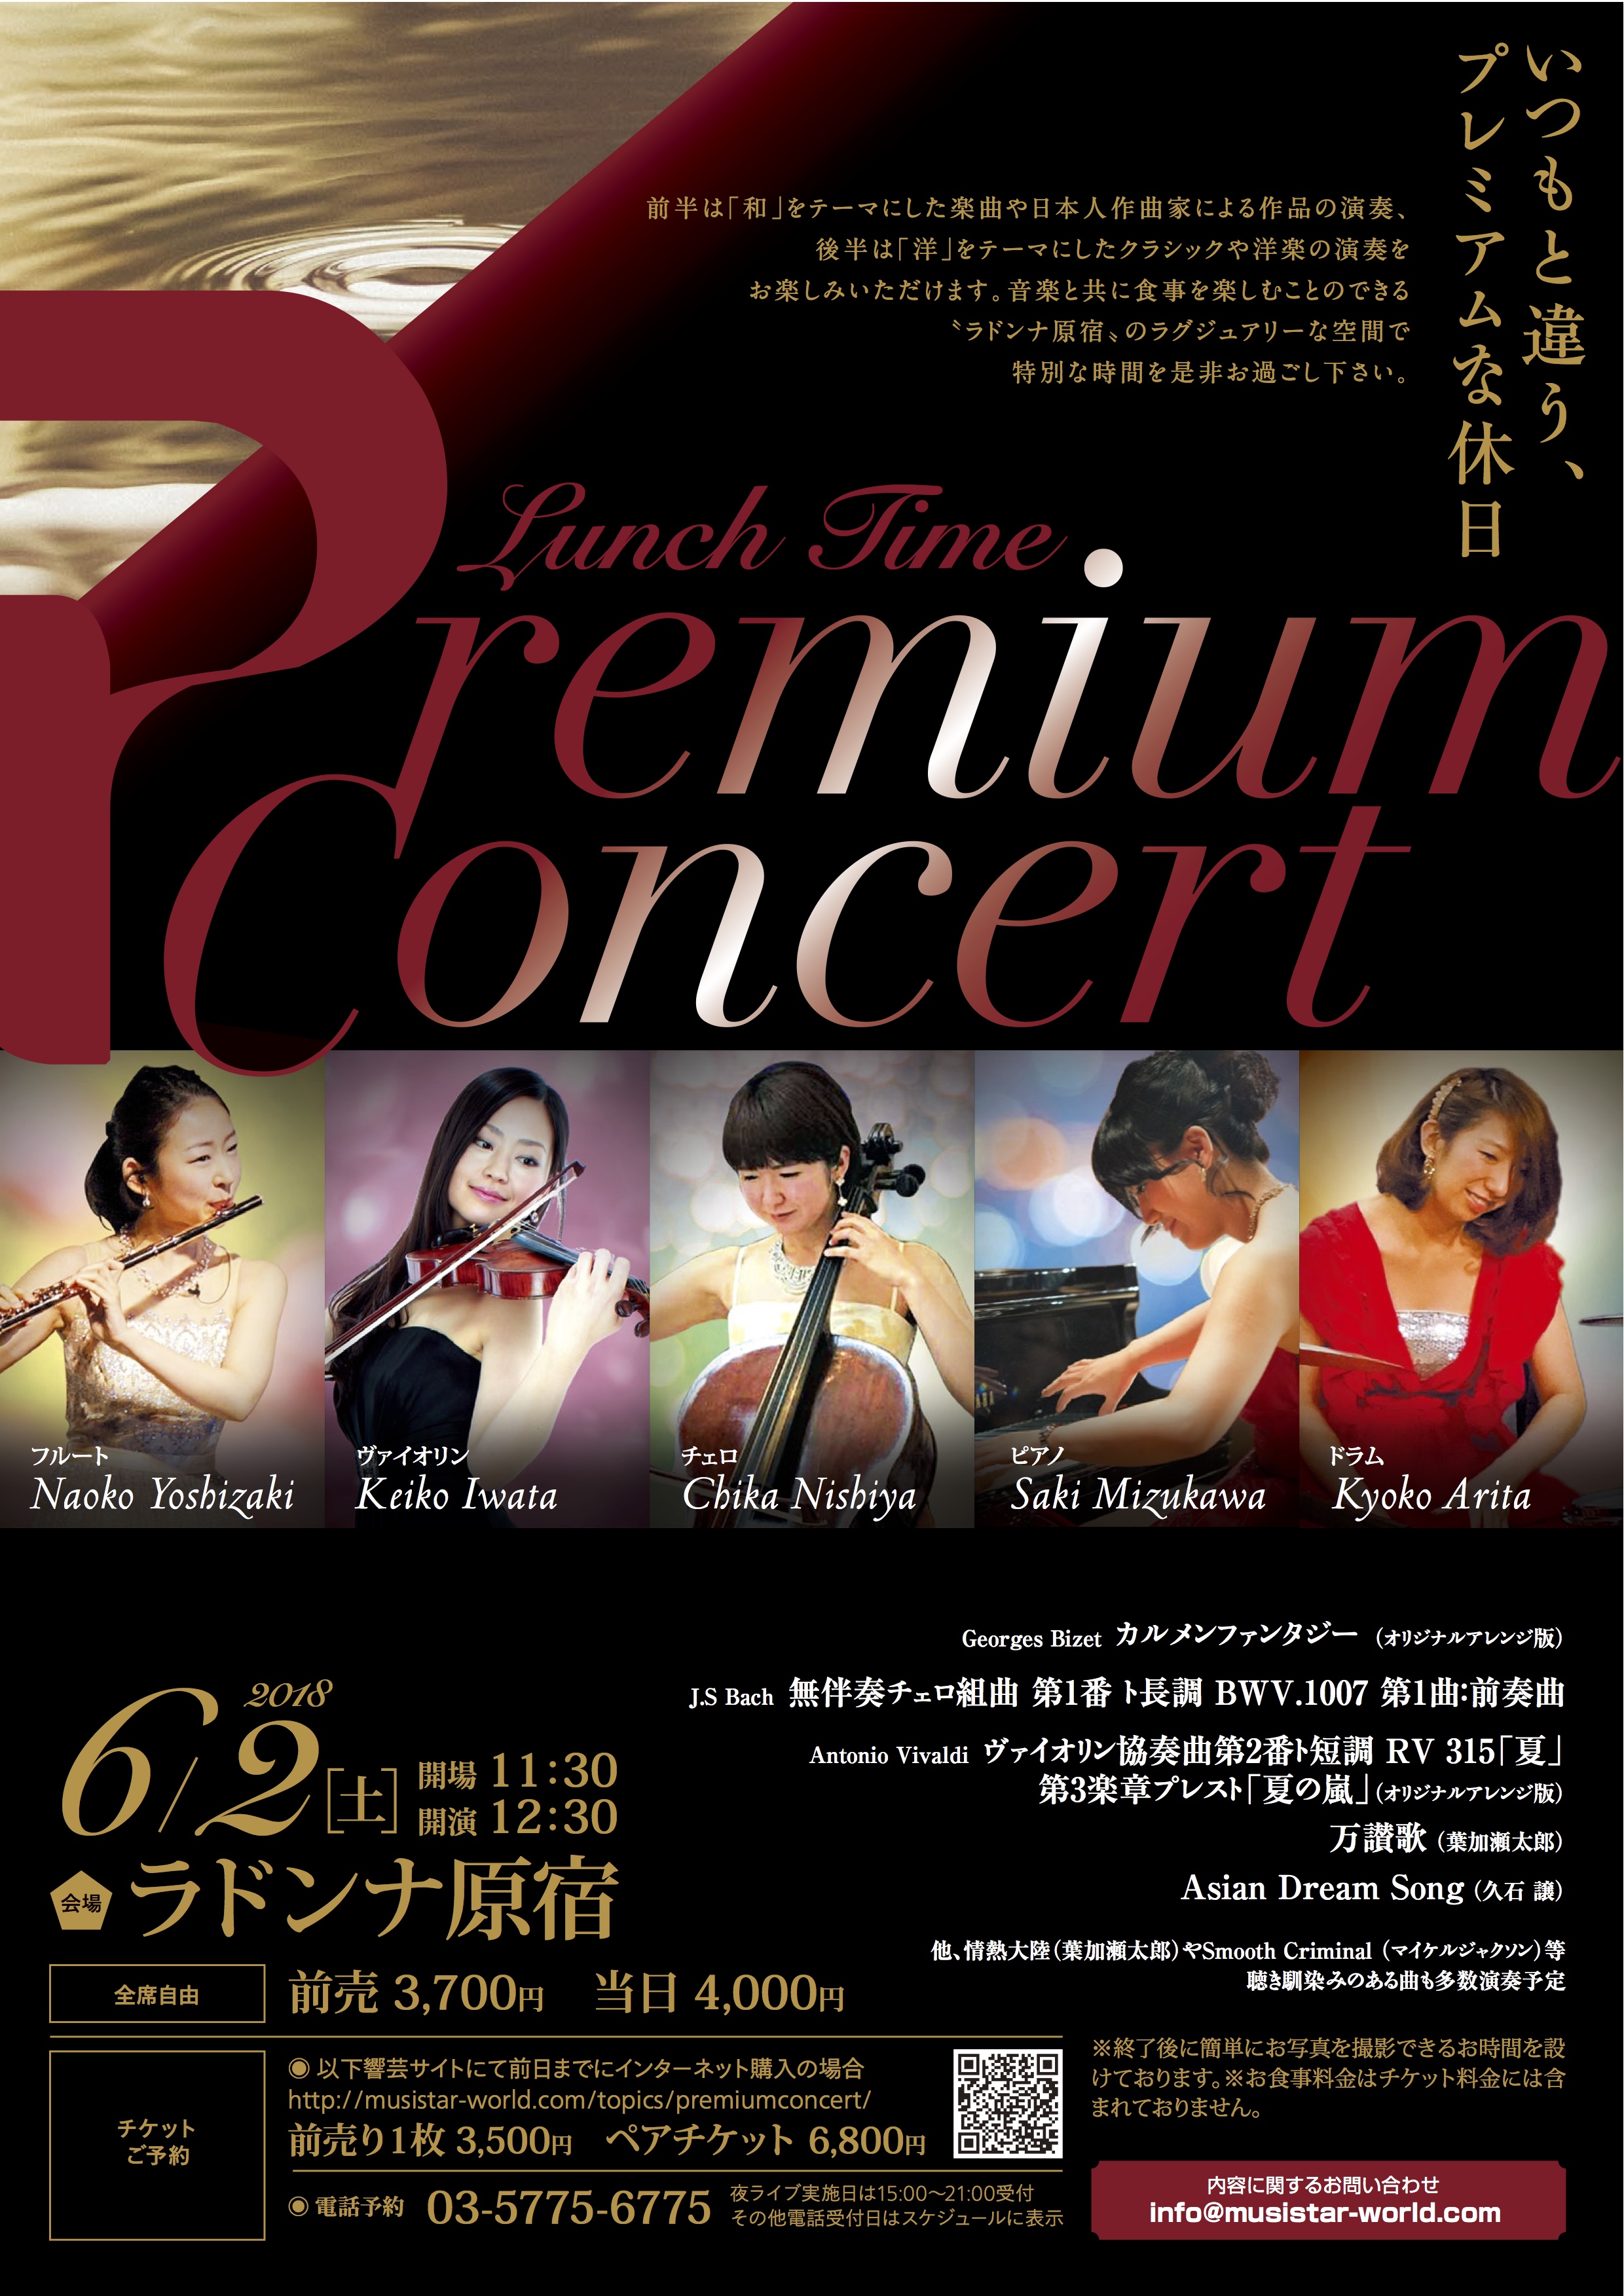 Premium Concert